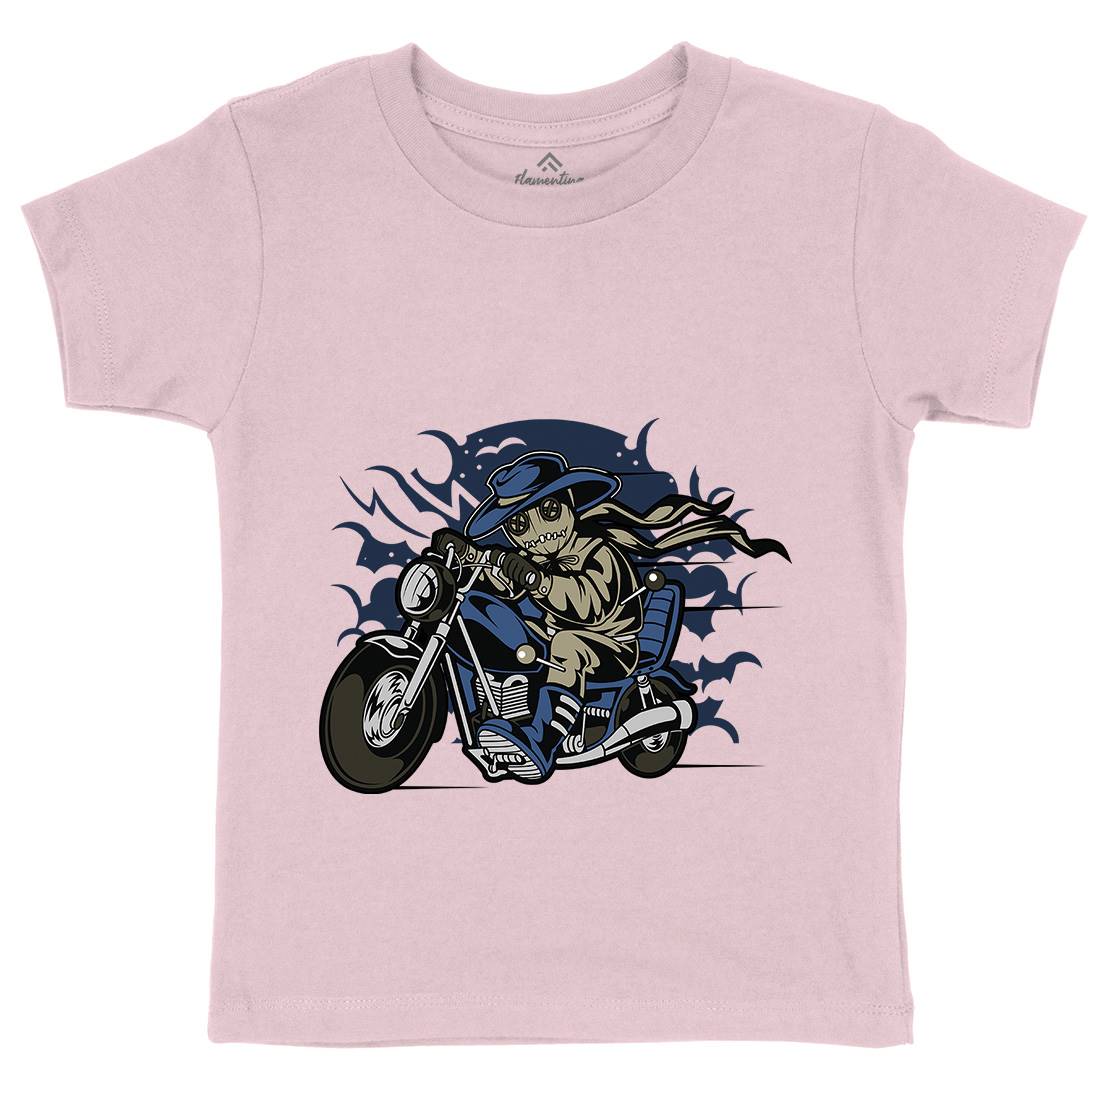 Voodoo Doll Biker Kids Crew Neck T-Shirt Motorcycles C469